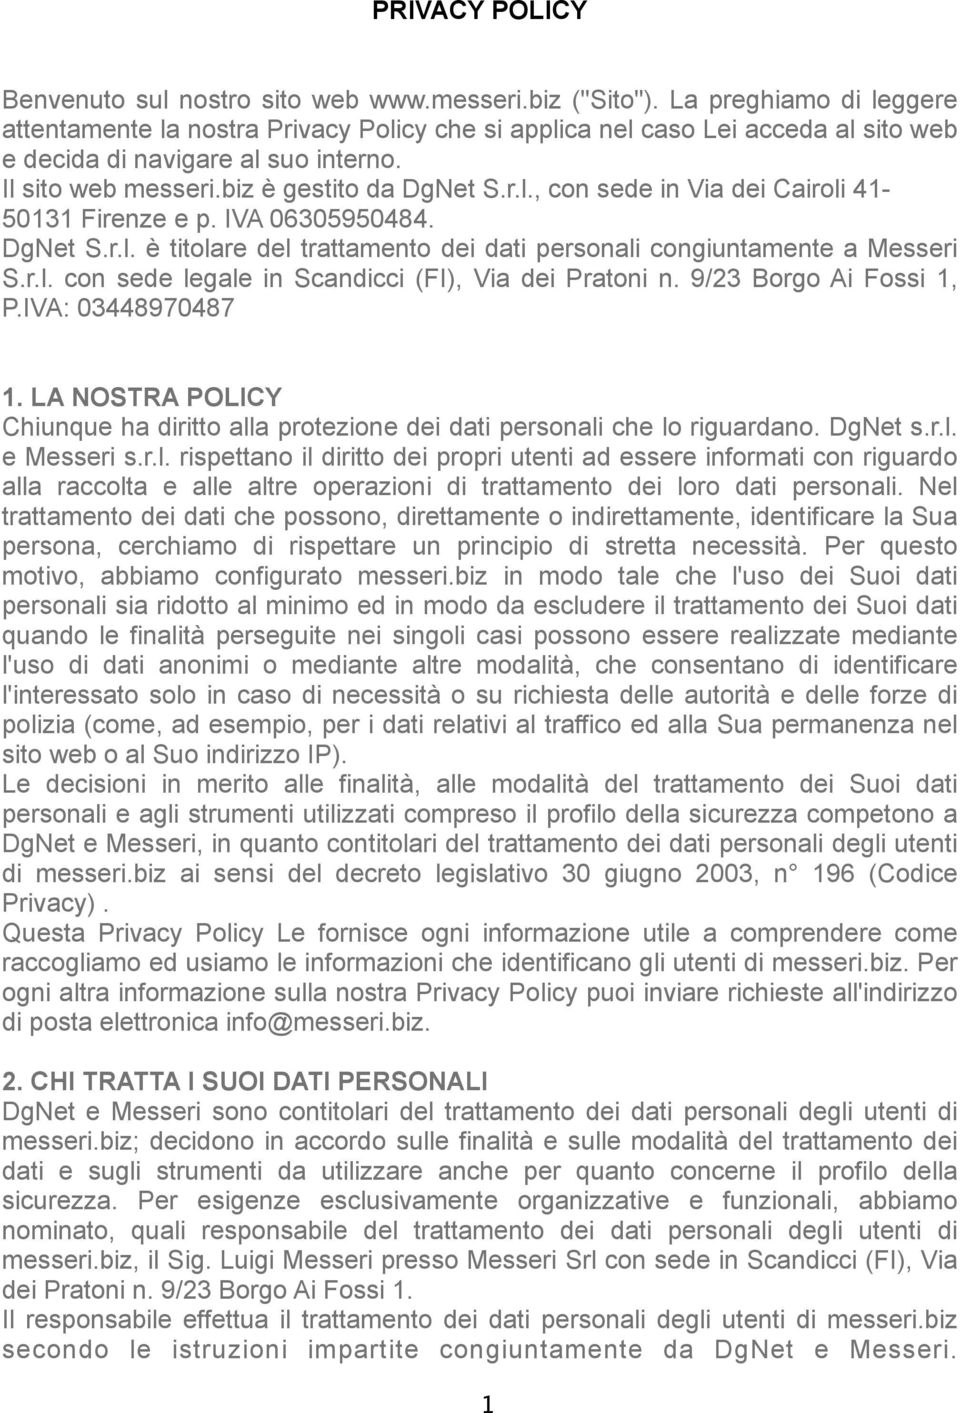 IVA 06305950484. DgNet S.r.l. è titolare del trattamento dei dati personali congiuntamente a Messeri S.r.l. con sede legale in Scandicci (FI), Via dei Pratoni n. 9/23 Borgo Ai Fossi 1, P.